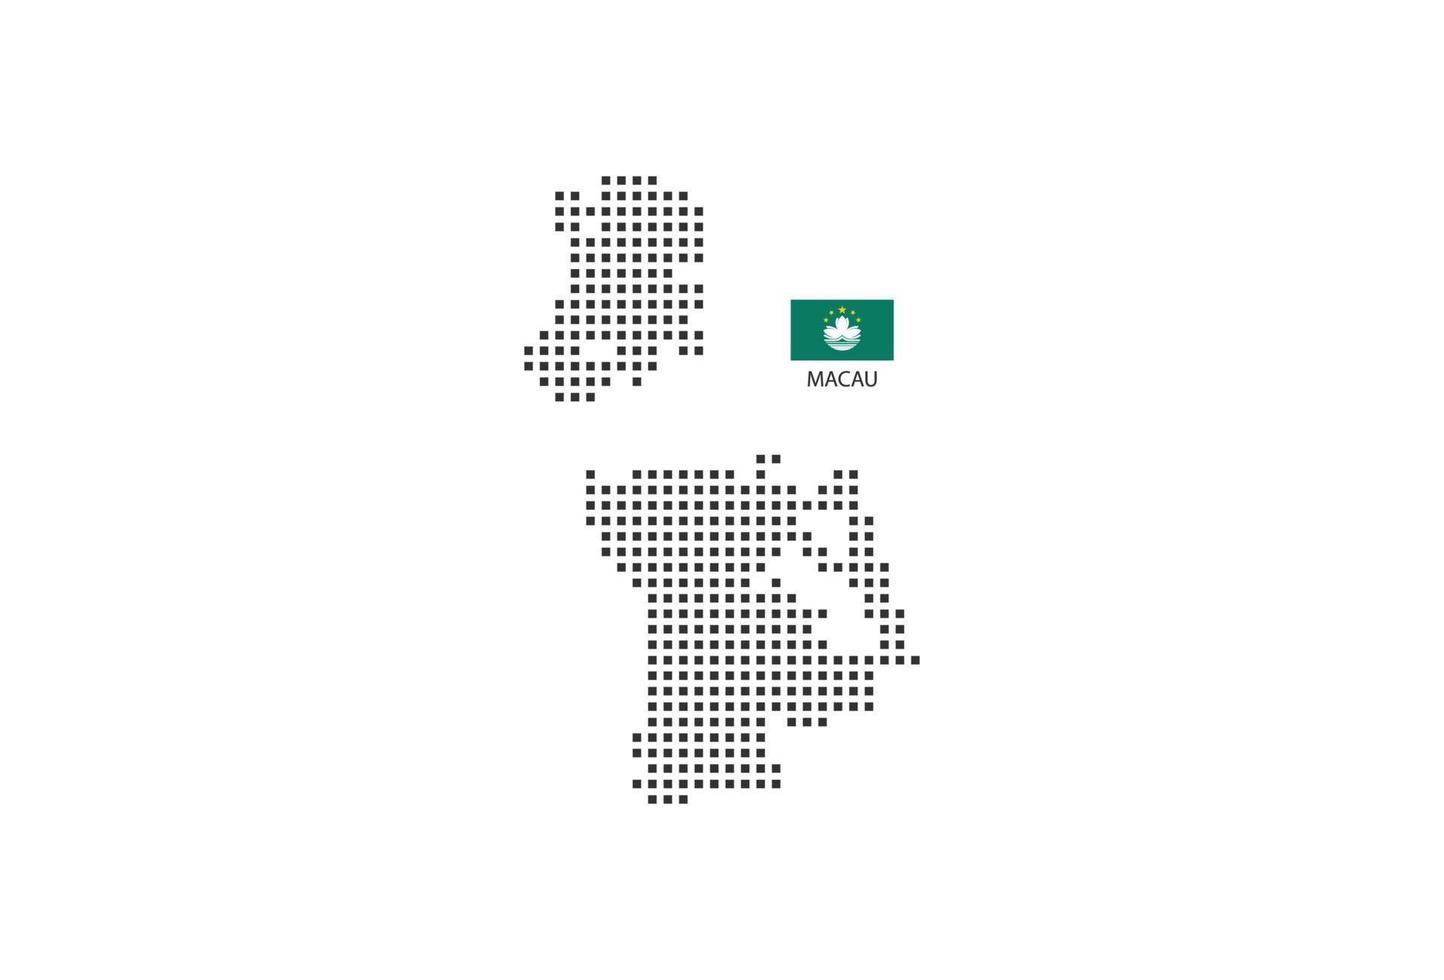 Vektor quadratische Pixel gepunktete Karte von Macau isoliert auf weißem Hintergrund mit Macau-Flagge.